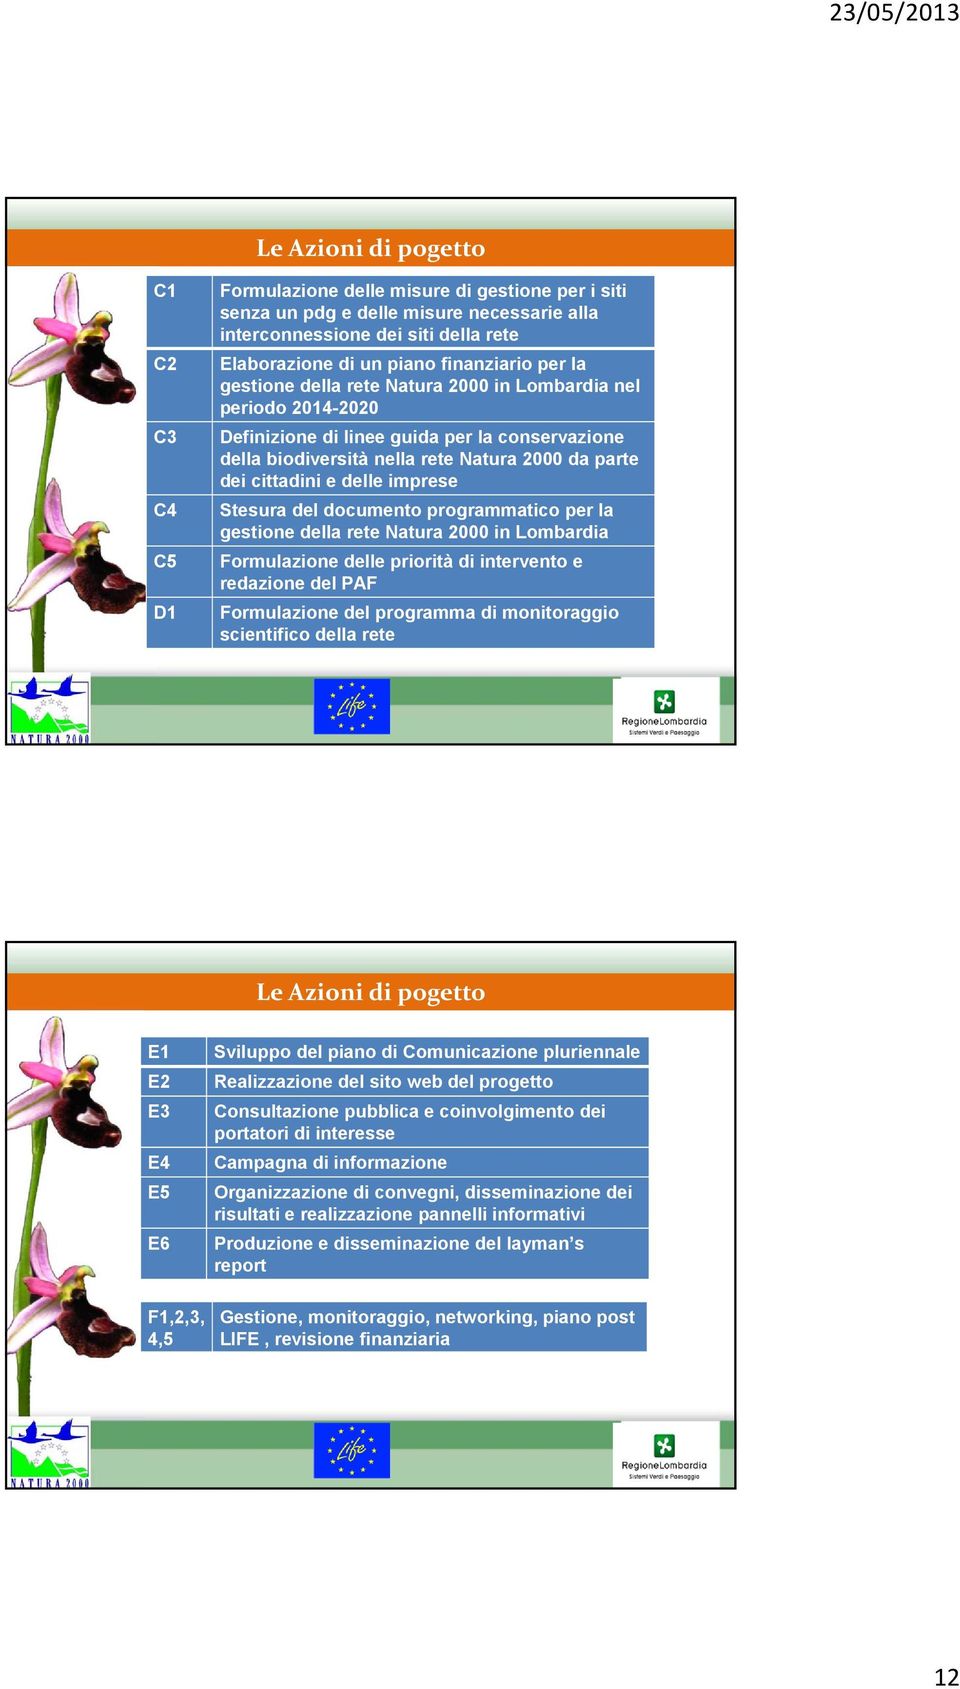 e delle imprese Stesura del documento programmatico per la gestione della rete Natura 2000 in Lombardia Formulazione delle priorità di intervento e redazione del PAF Formulazione del programma di